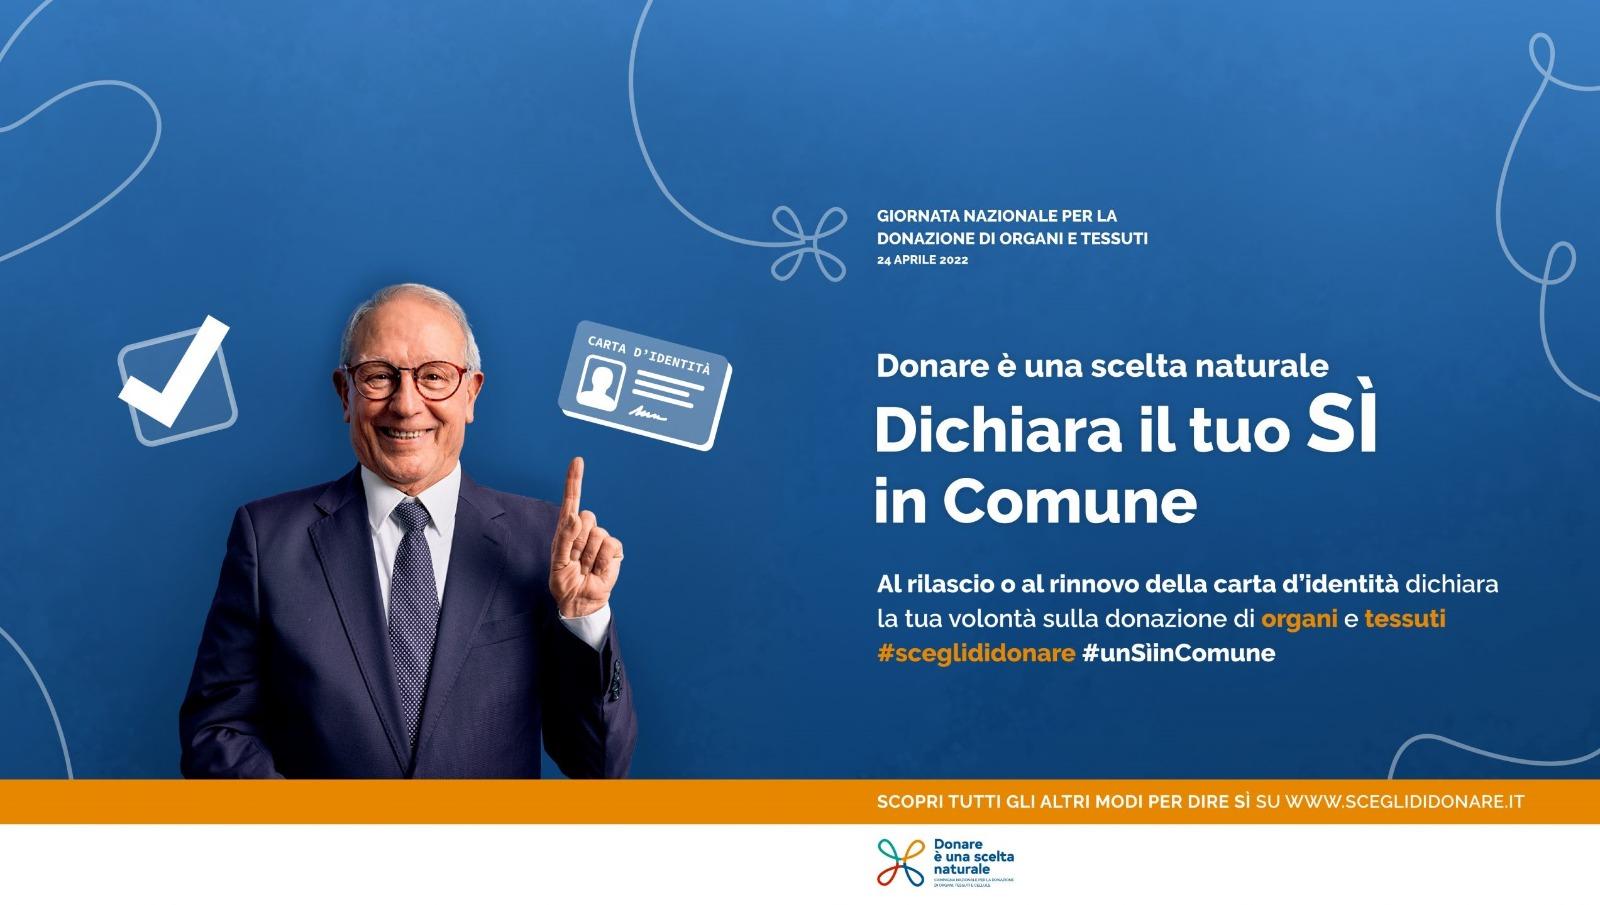 La sindaca di Ancona testimonial in favore della donazione di organi